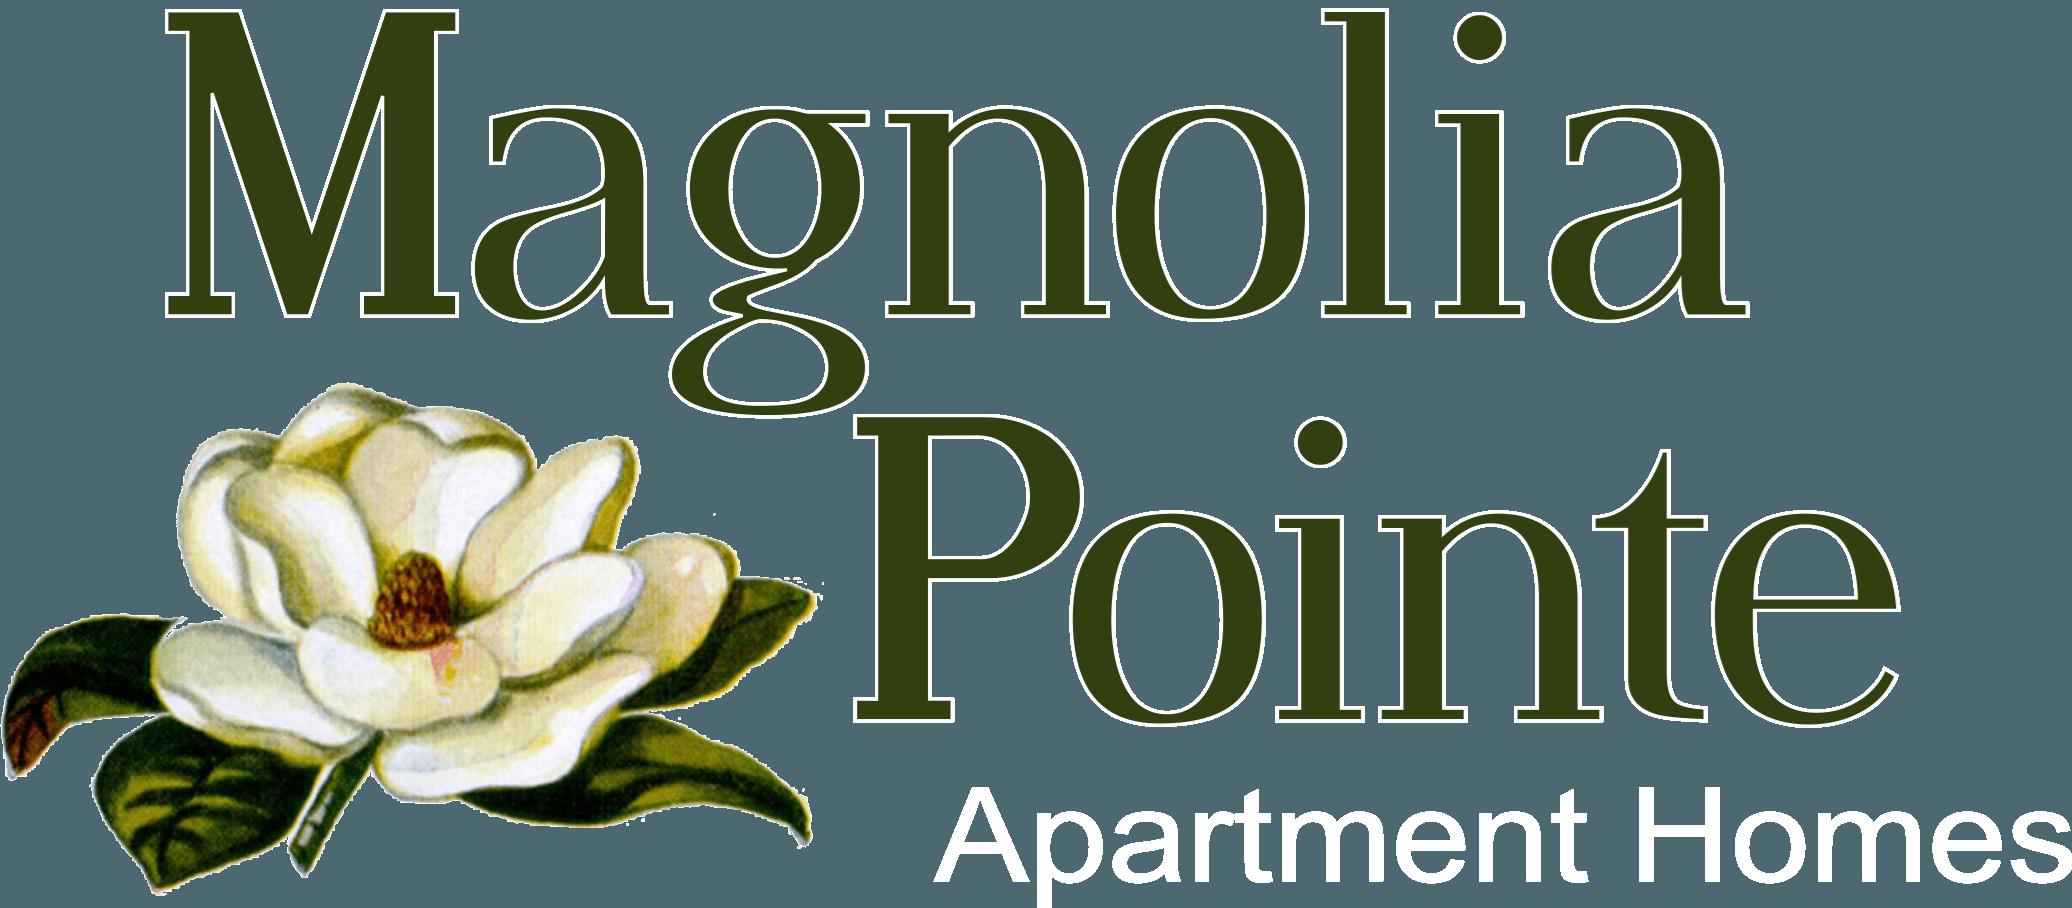 Magnolia Flower Logo - Magnolia Pointe. Apartments in Durham, NC